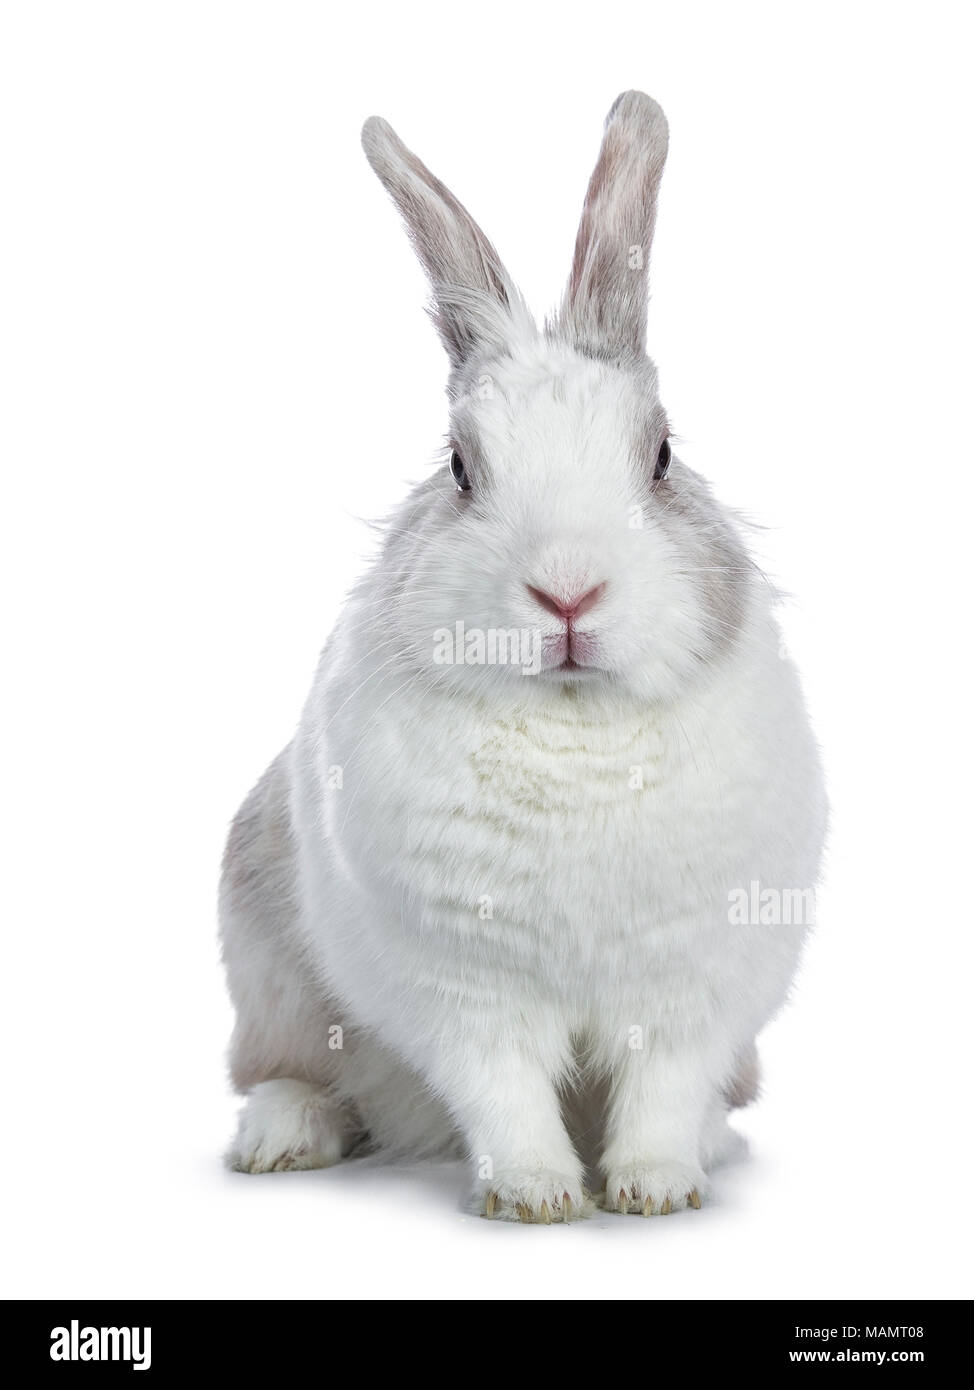 Blanc gris mignon avec shorthair bunny assis face caméra isolé sur fond blanc Banque D'Images